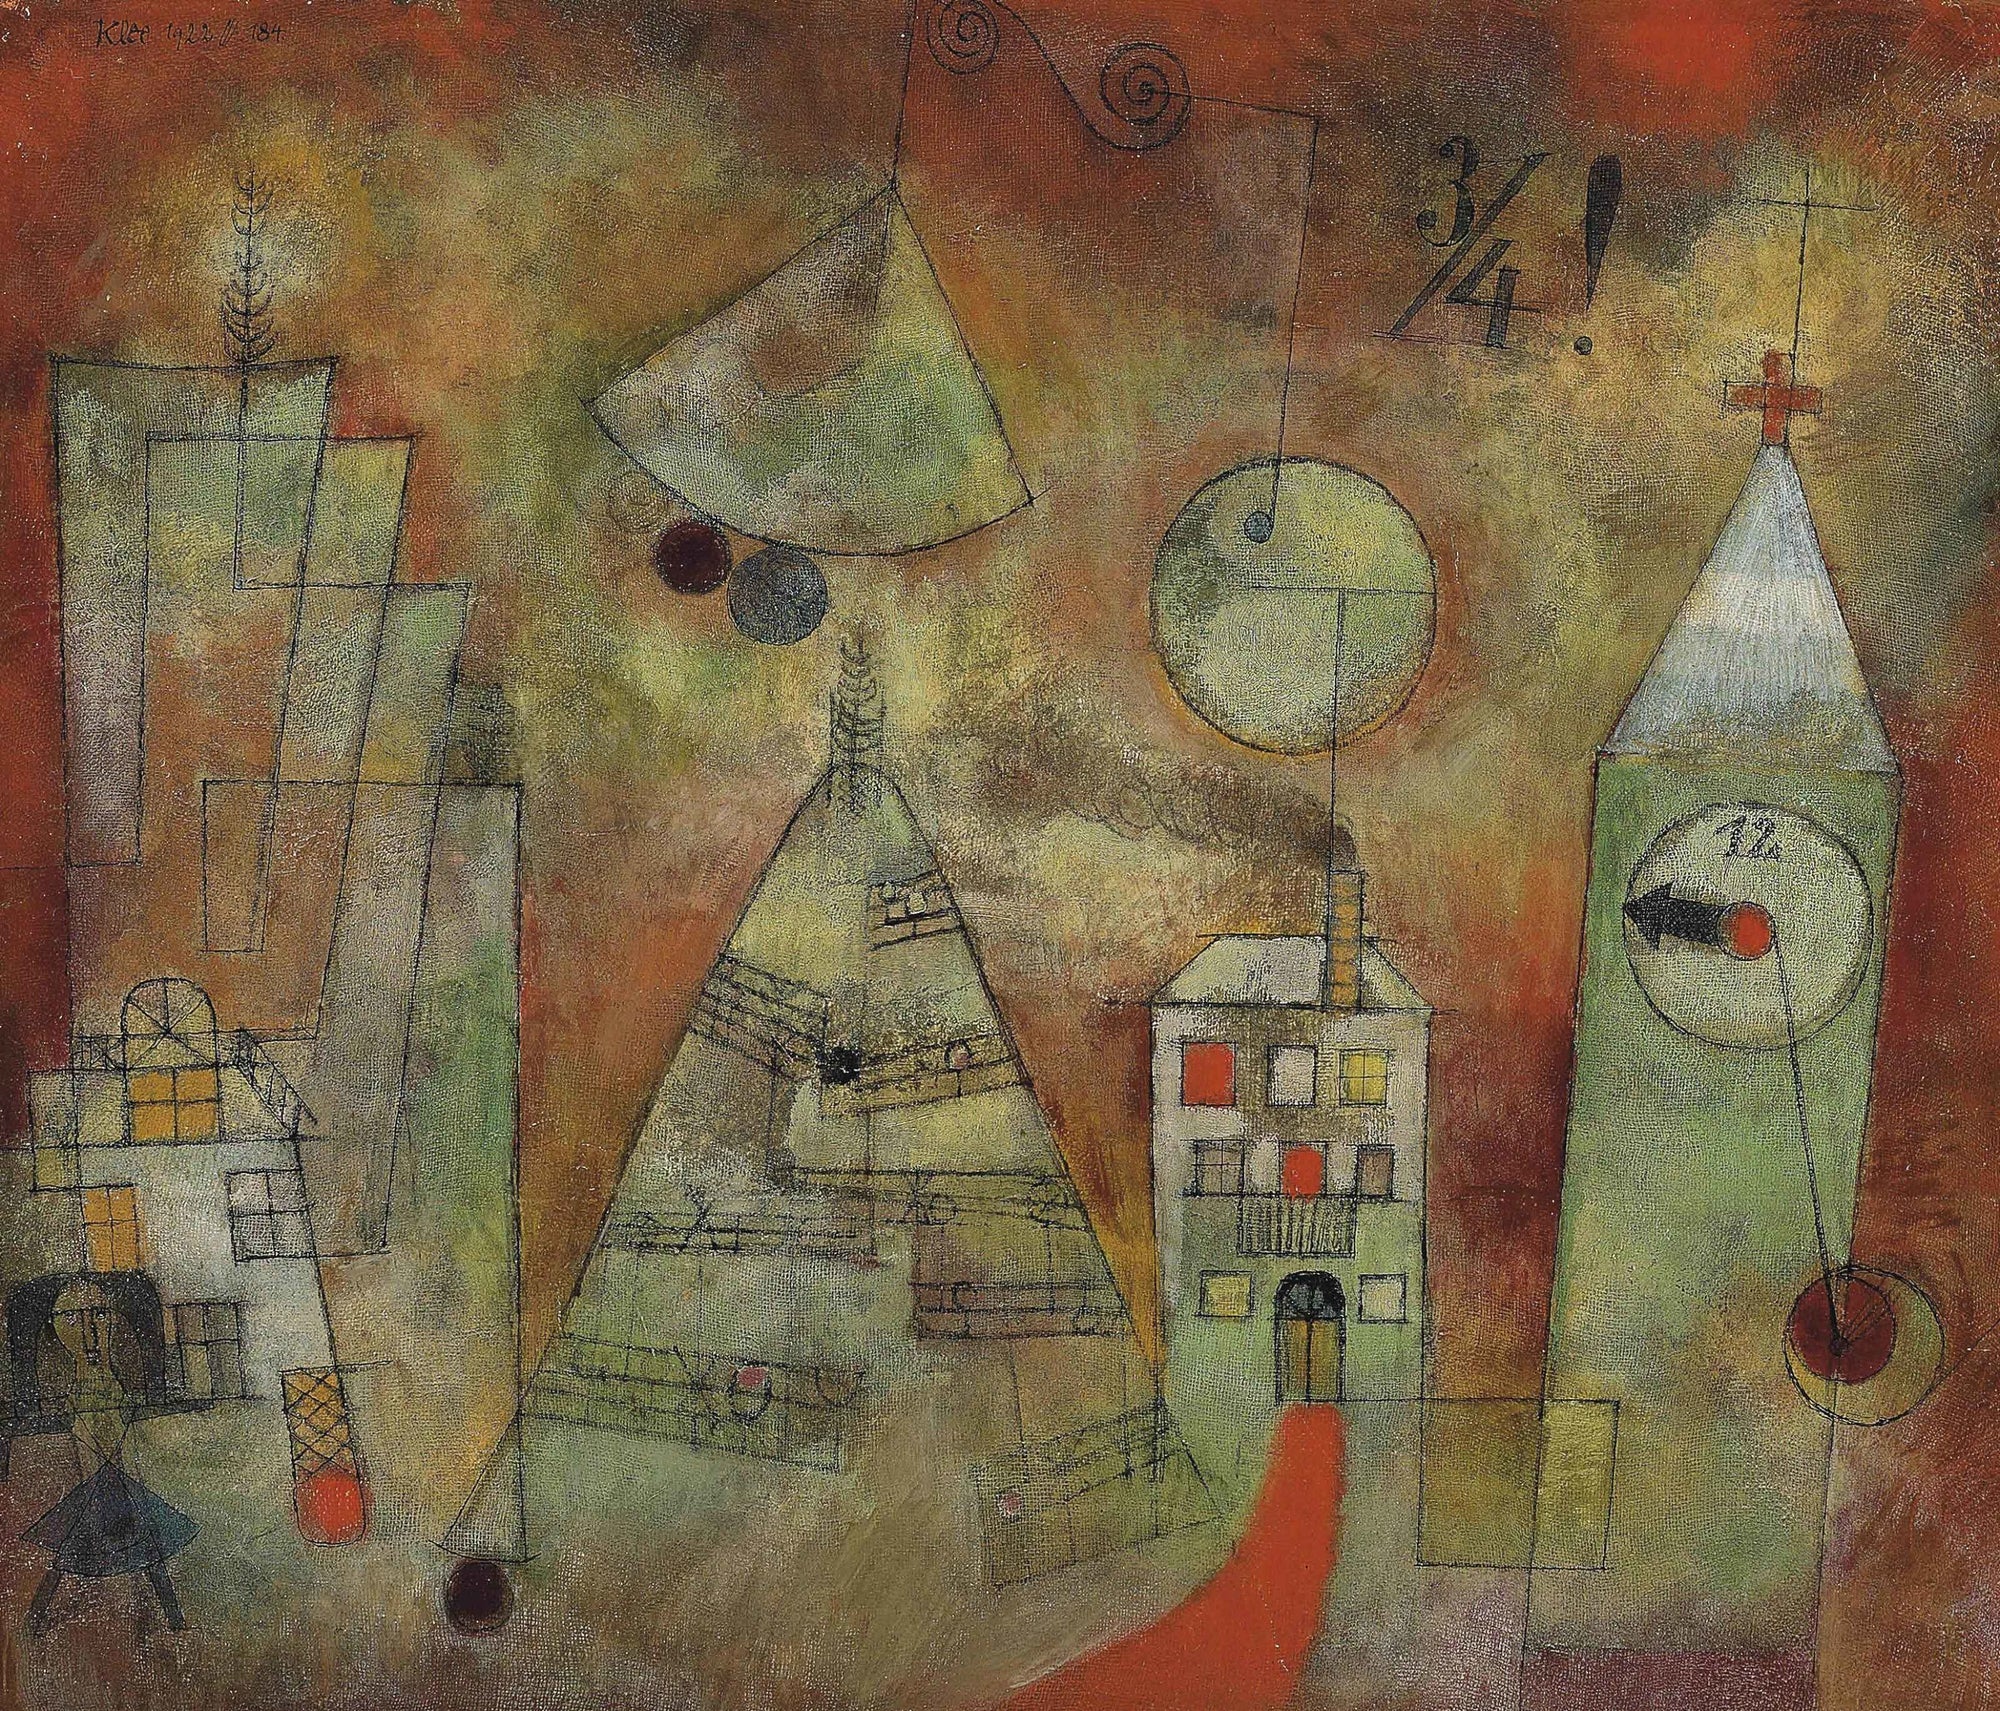 Heure fatidique à midi trois quarts - Paul Klee